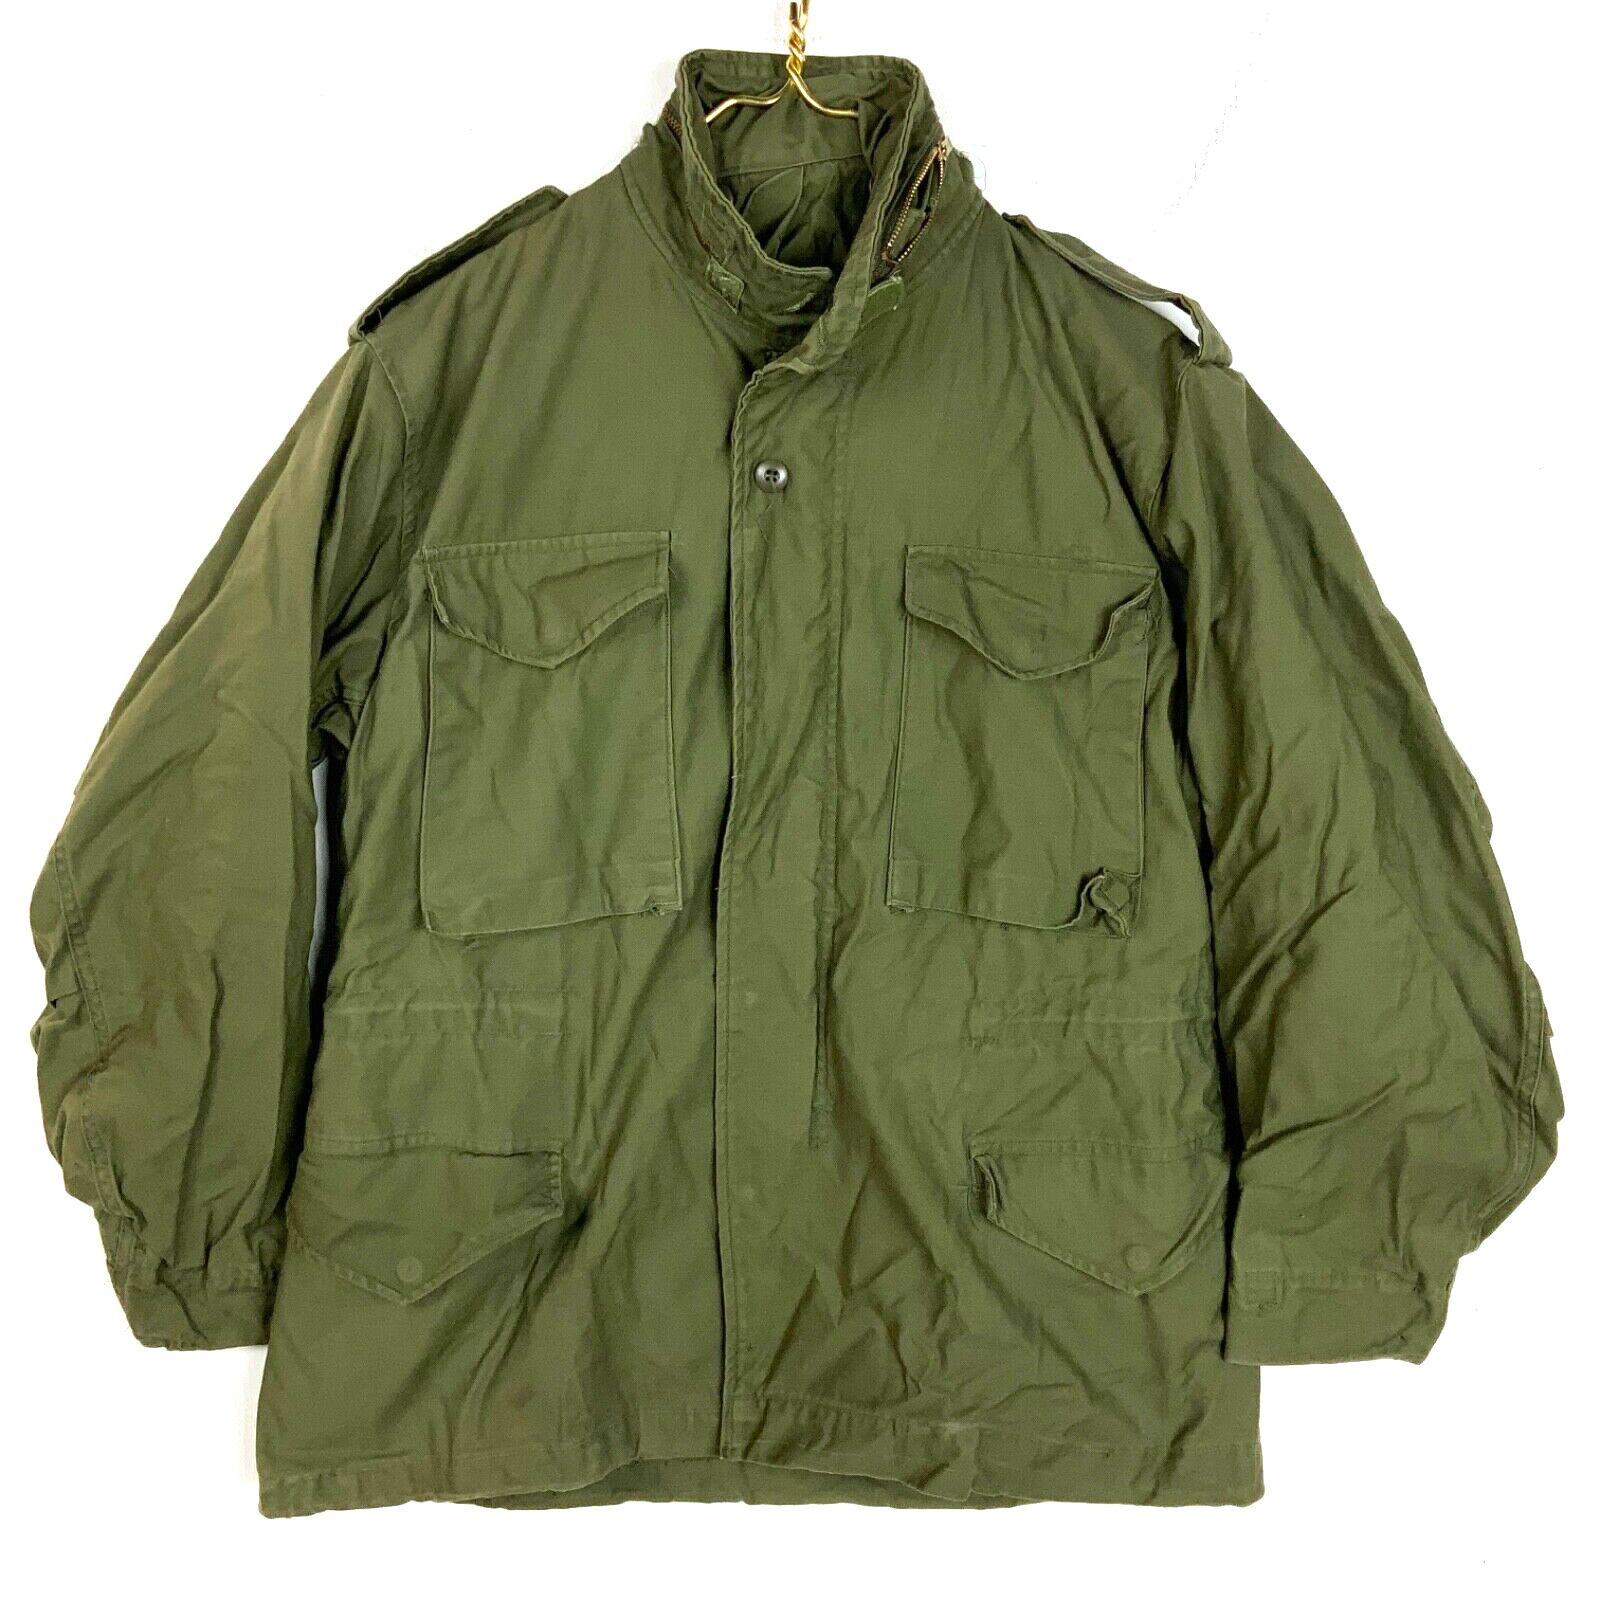 Vintage Military Field Jacket Lined Medium 1975 Full Zip Green Vietnam Era 70s